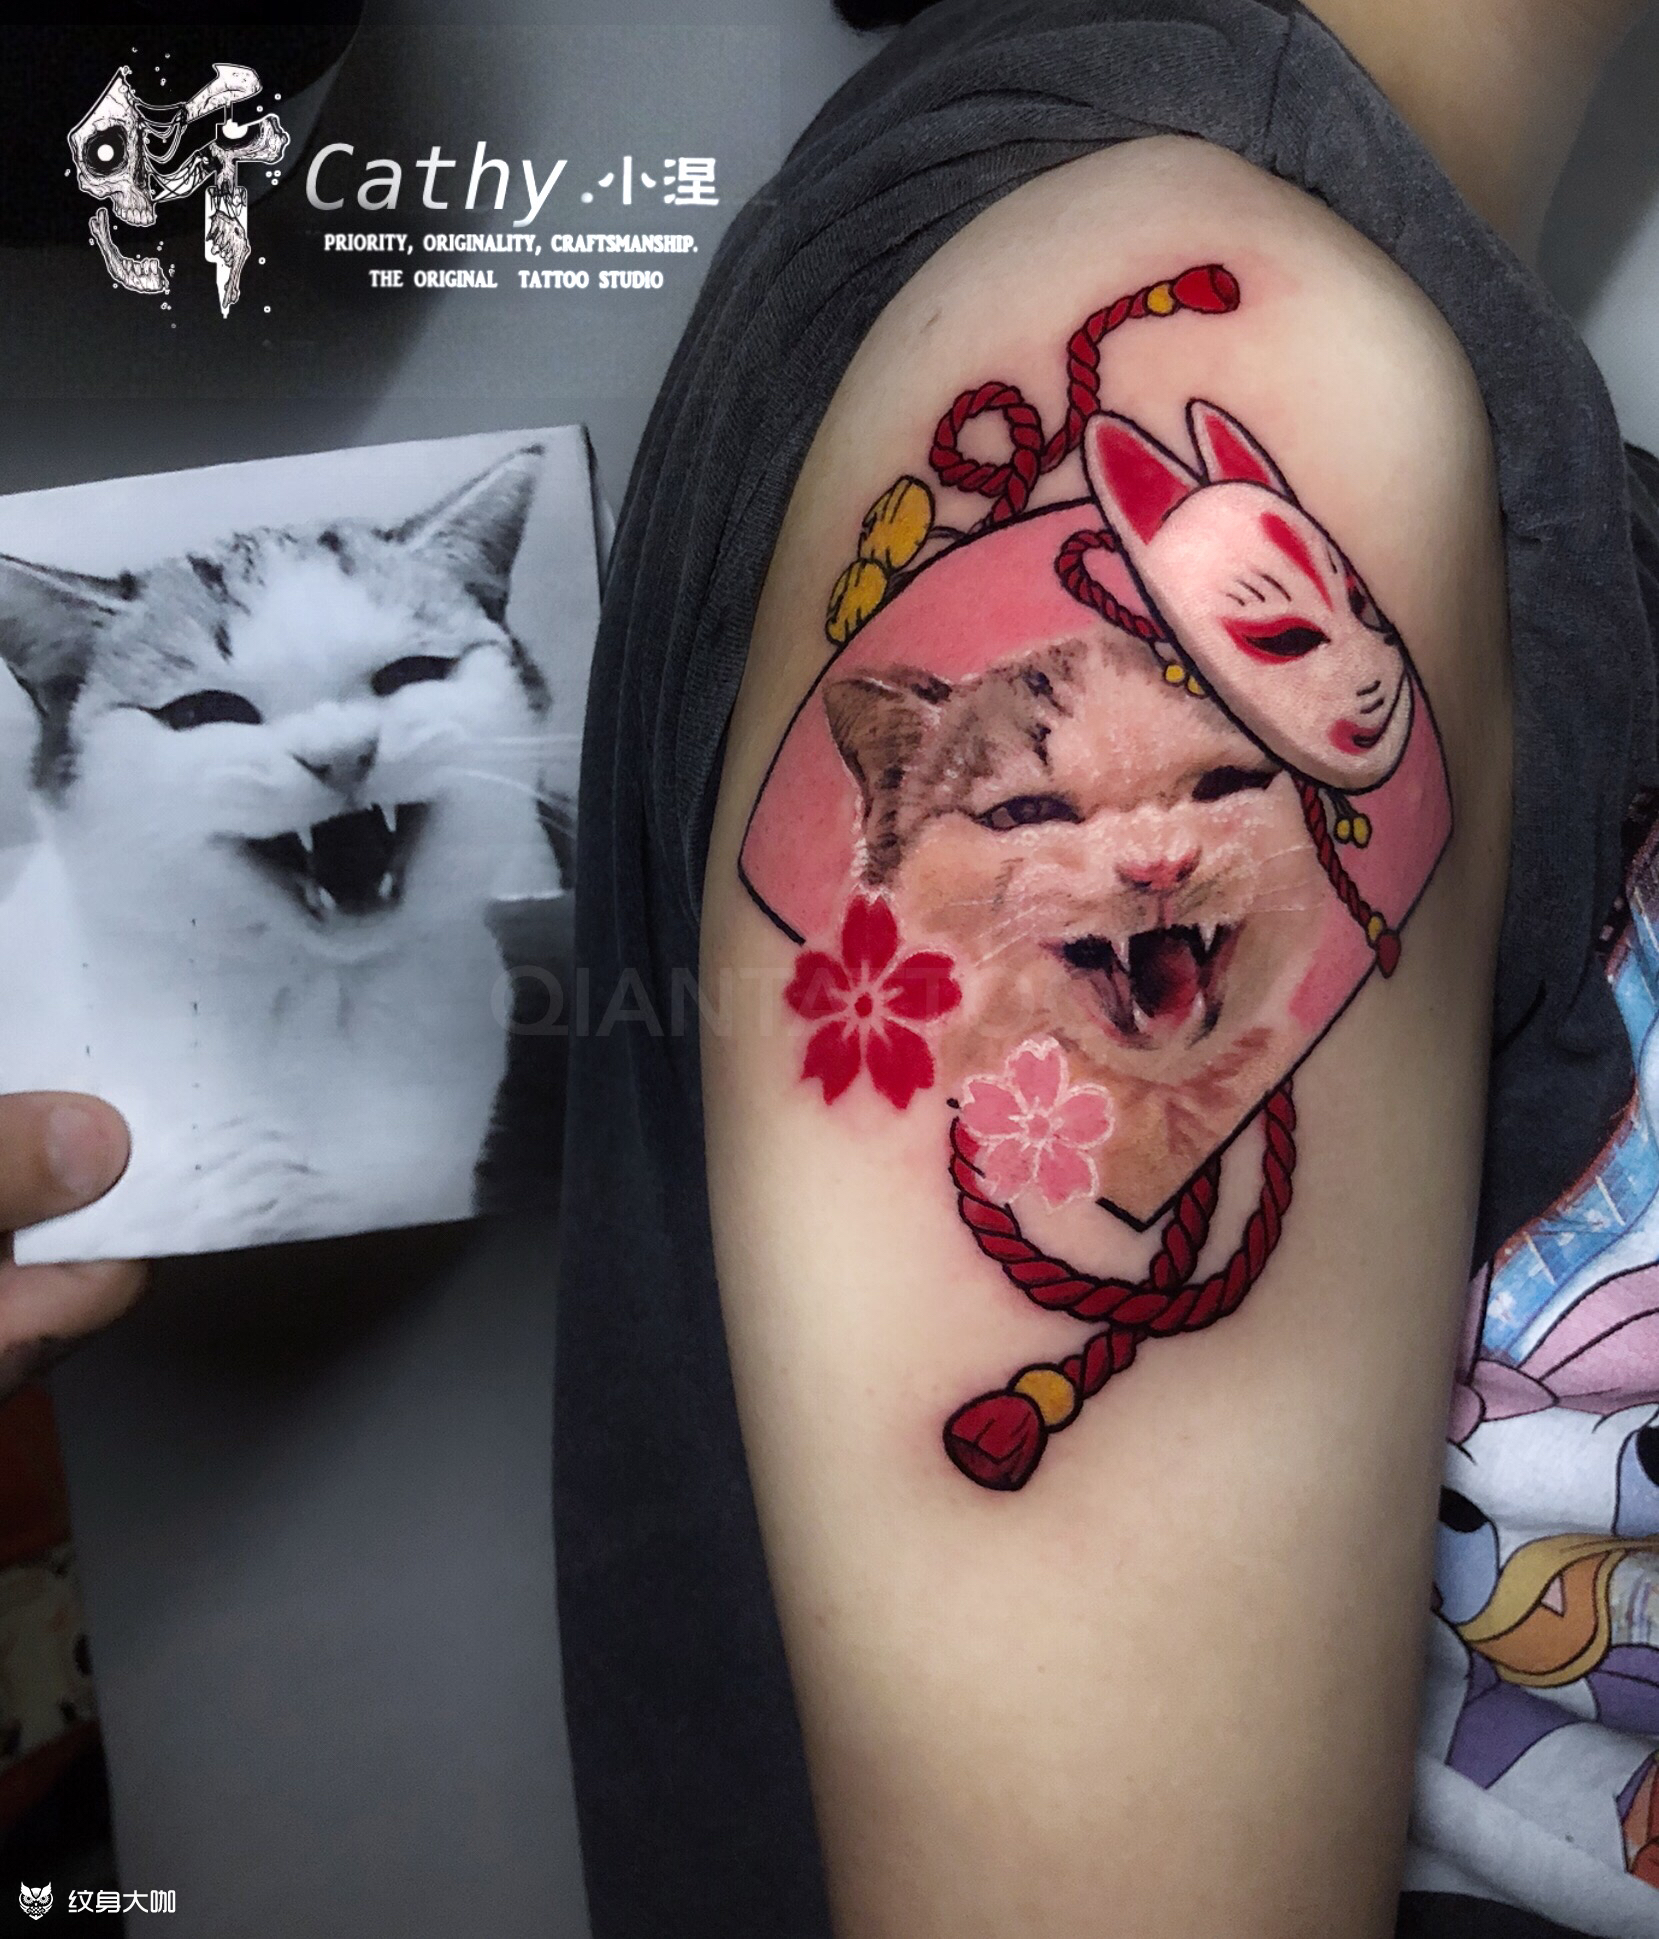 有什么有趣的猫纹身图案可以参考么？ - 知乎